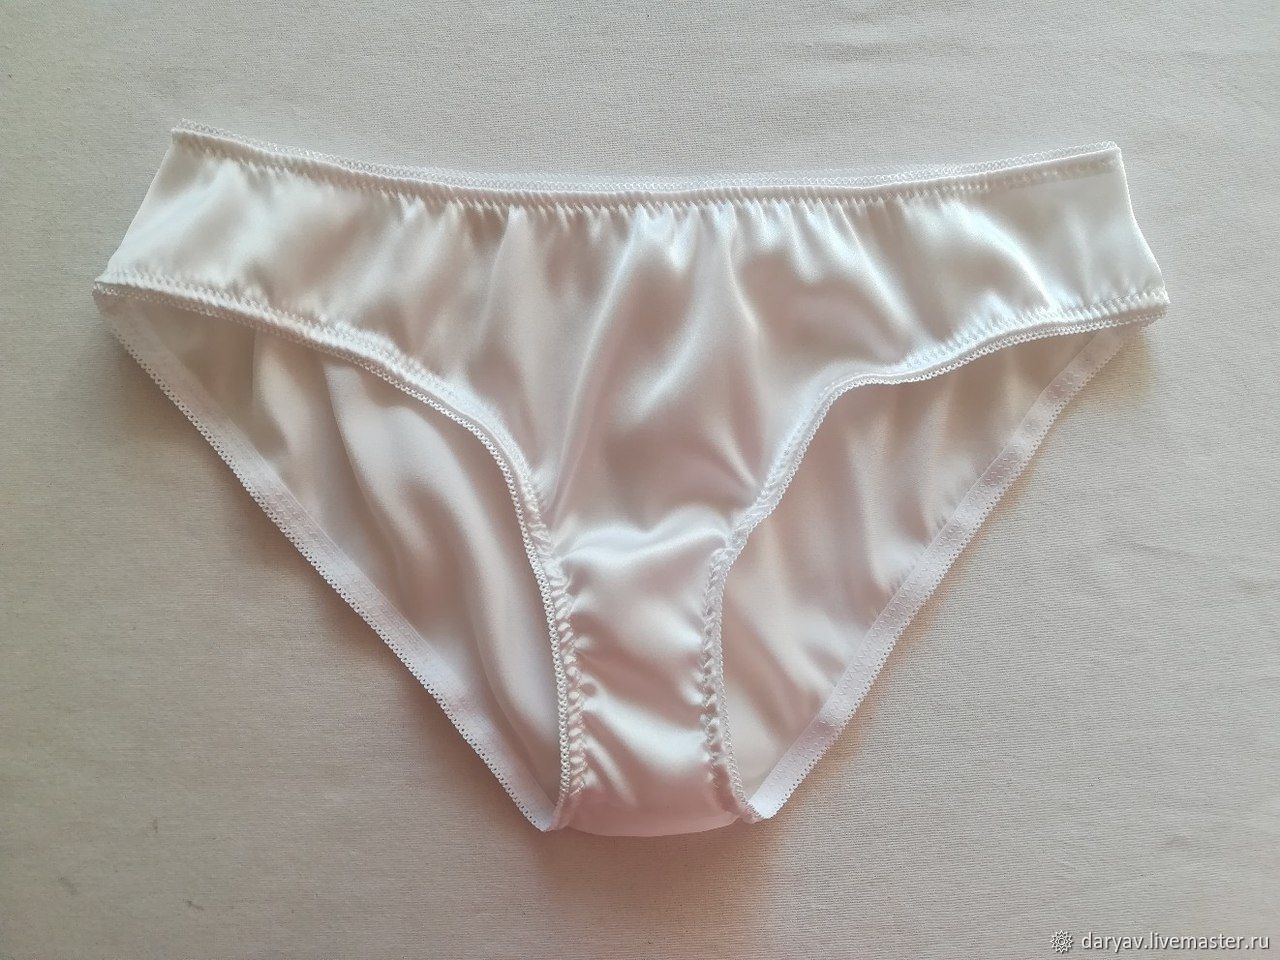 White silk panties. 